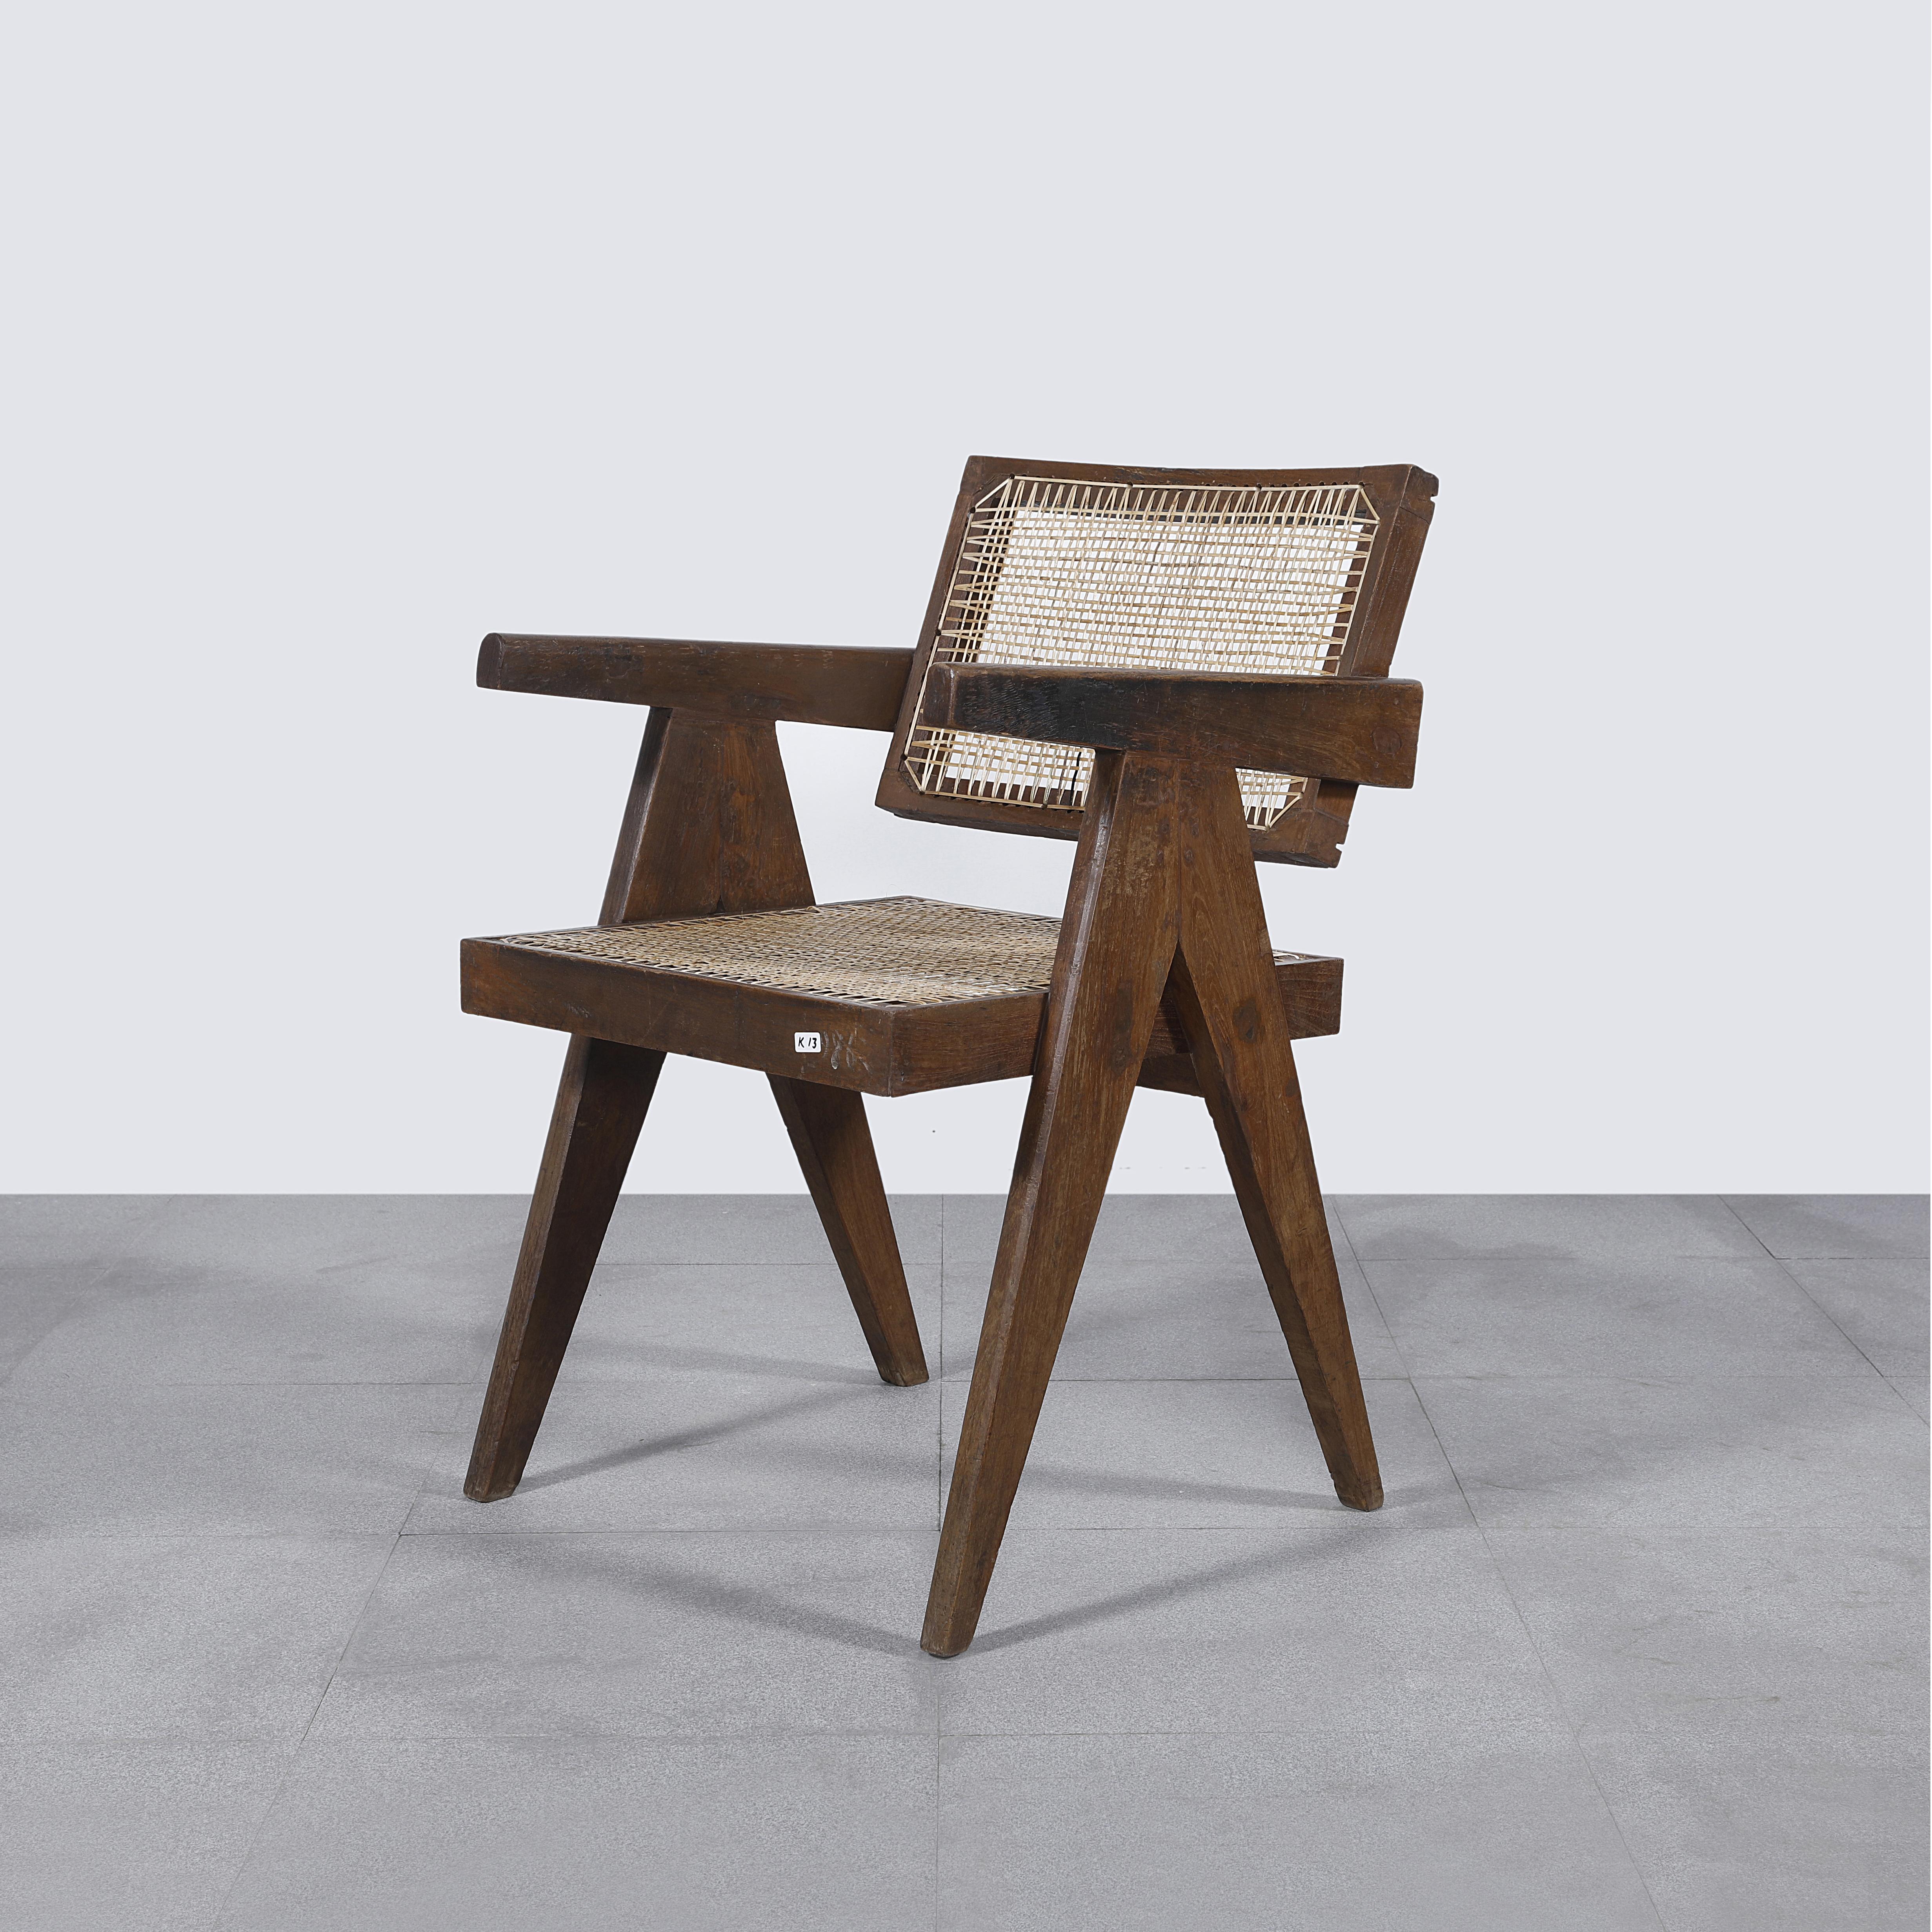 Der Stuhl ist aus patiniertem Teakholz gefertigt, was dem Stuhl einen starken Charakter verleiht, der alle Spuren des Alters und seine Einzigartigkeit zeigt. Dieses Stück hat authentische Buchstaben auf der Rückseite, die es noch wertvoller machen